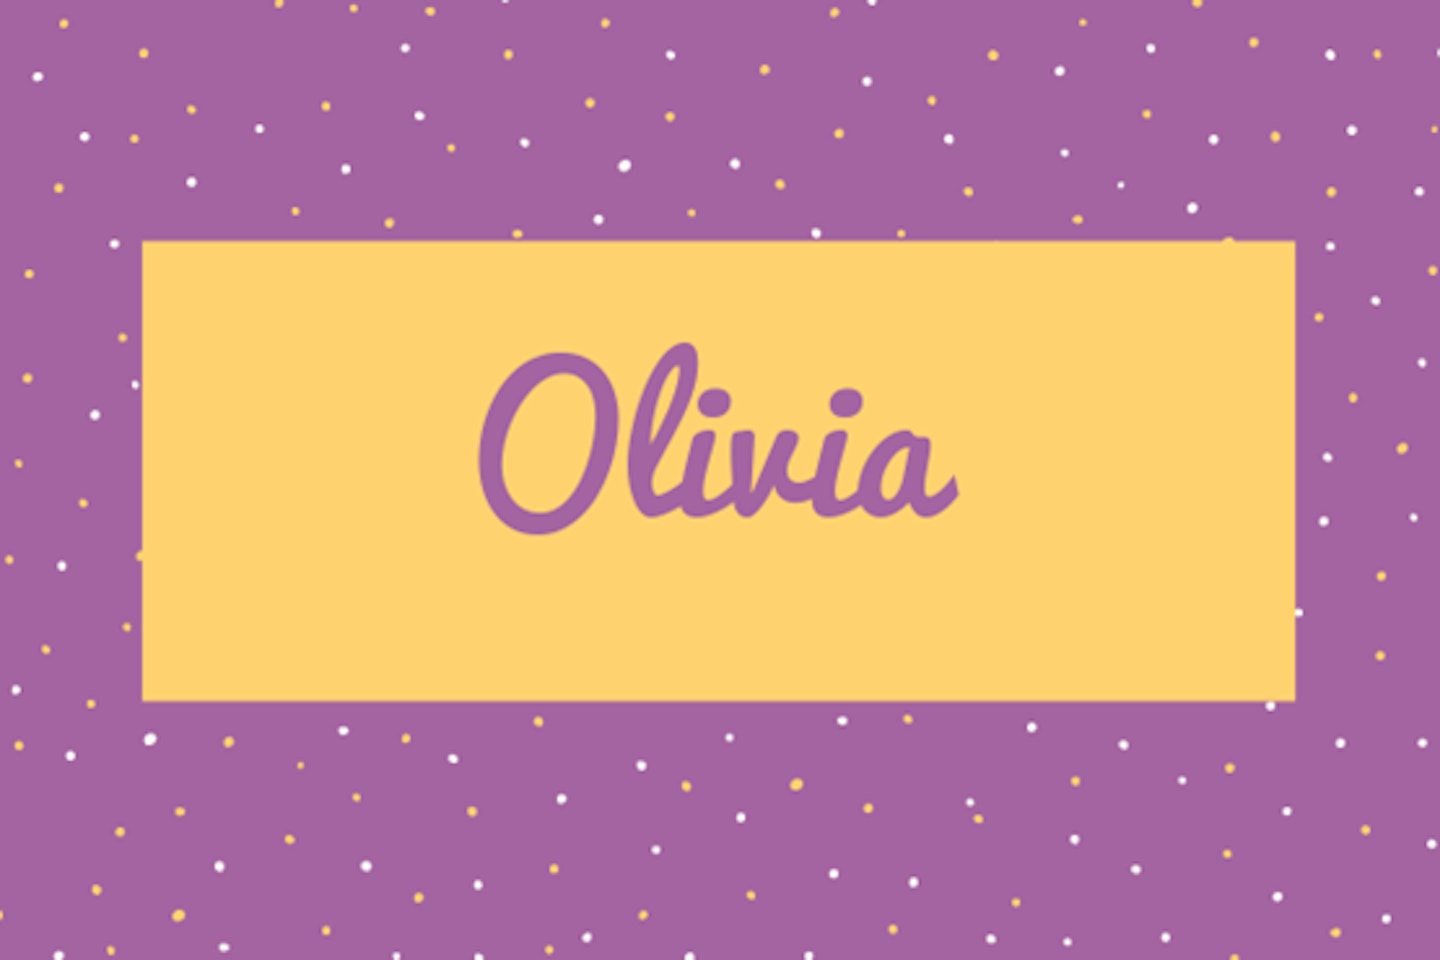 5) Olivia